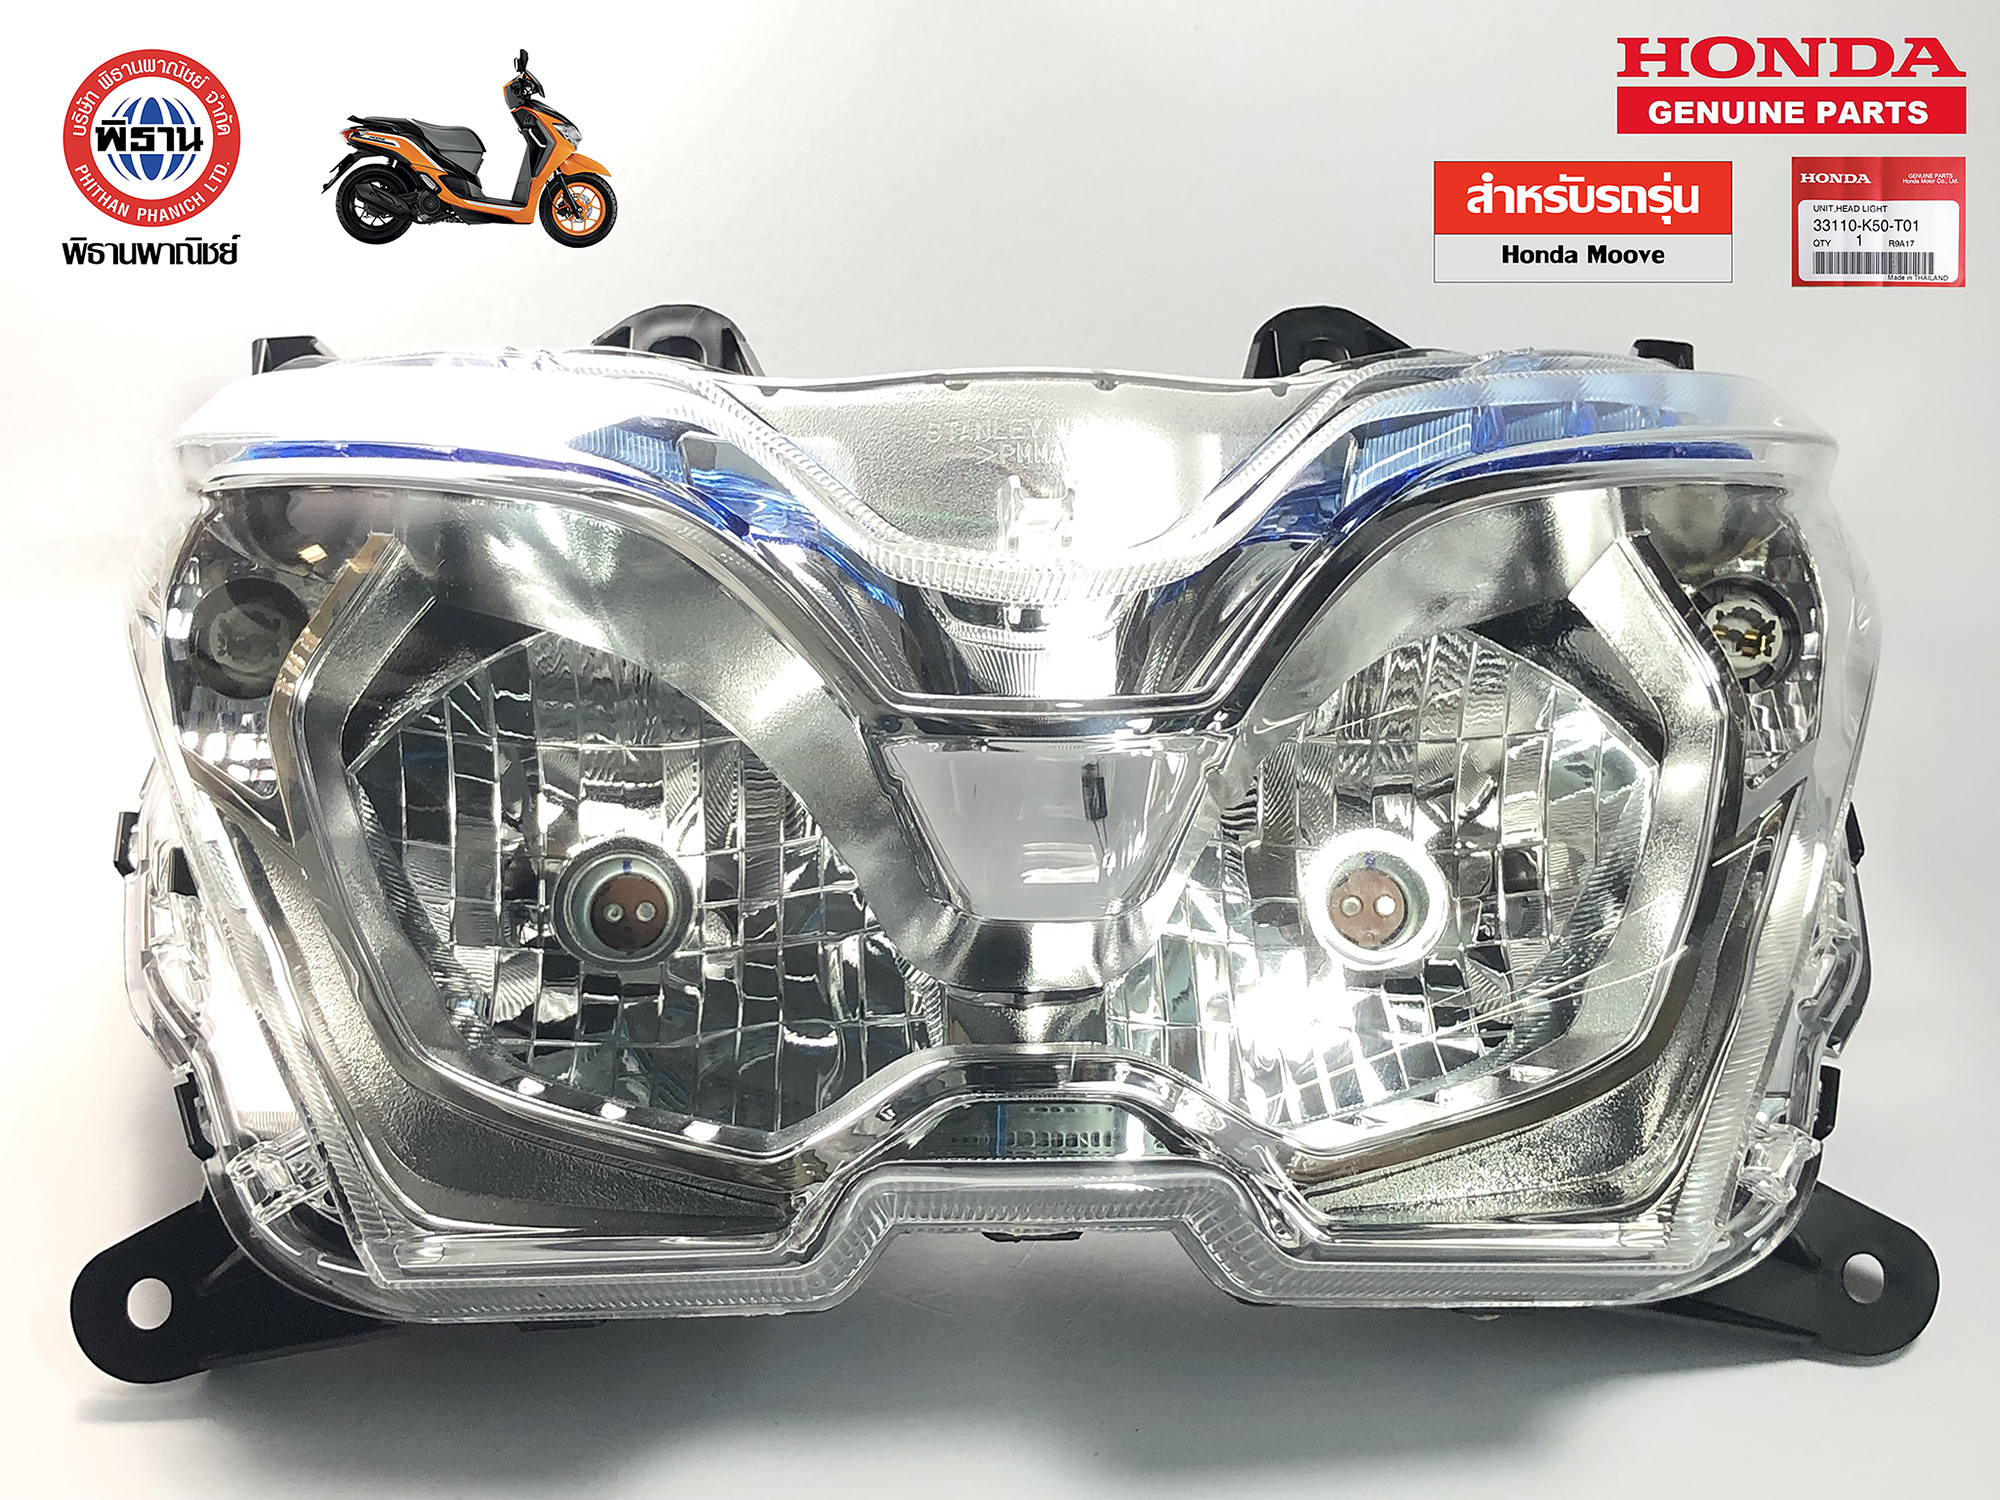 โคมไฟหน้า ของแท้ ฮอนด้า รุ่น Honda Moove /33110-K50-T01 #Phithan #เบิกศูนย์